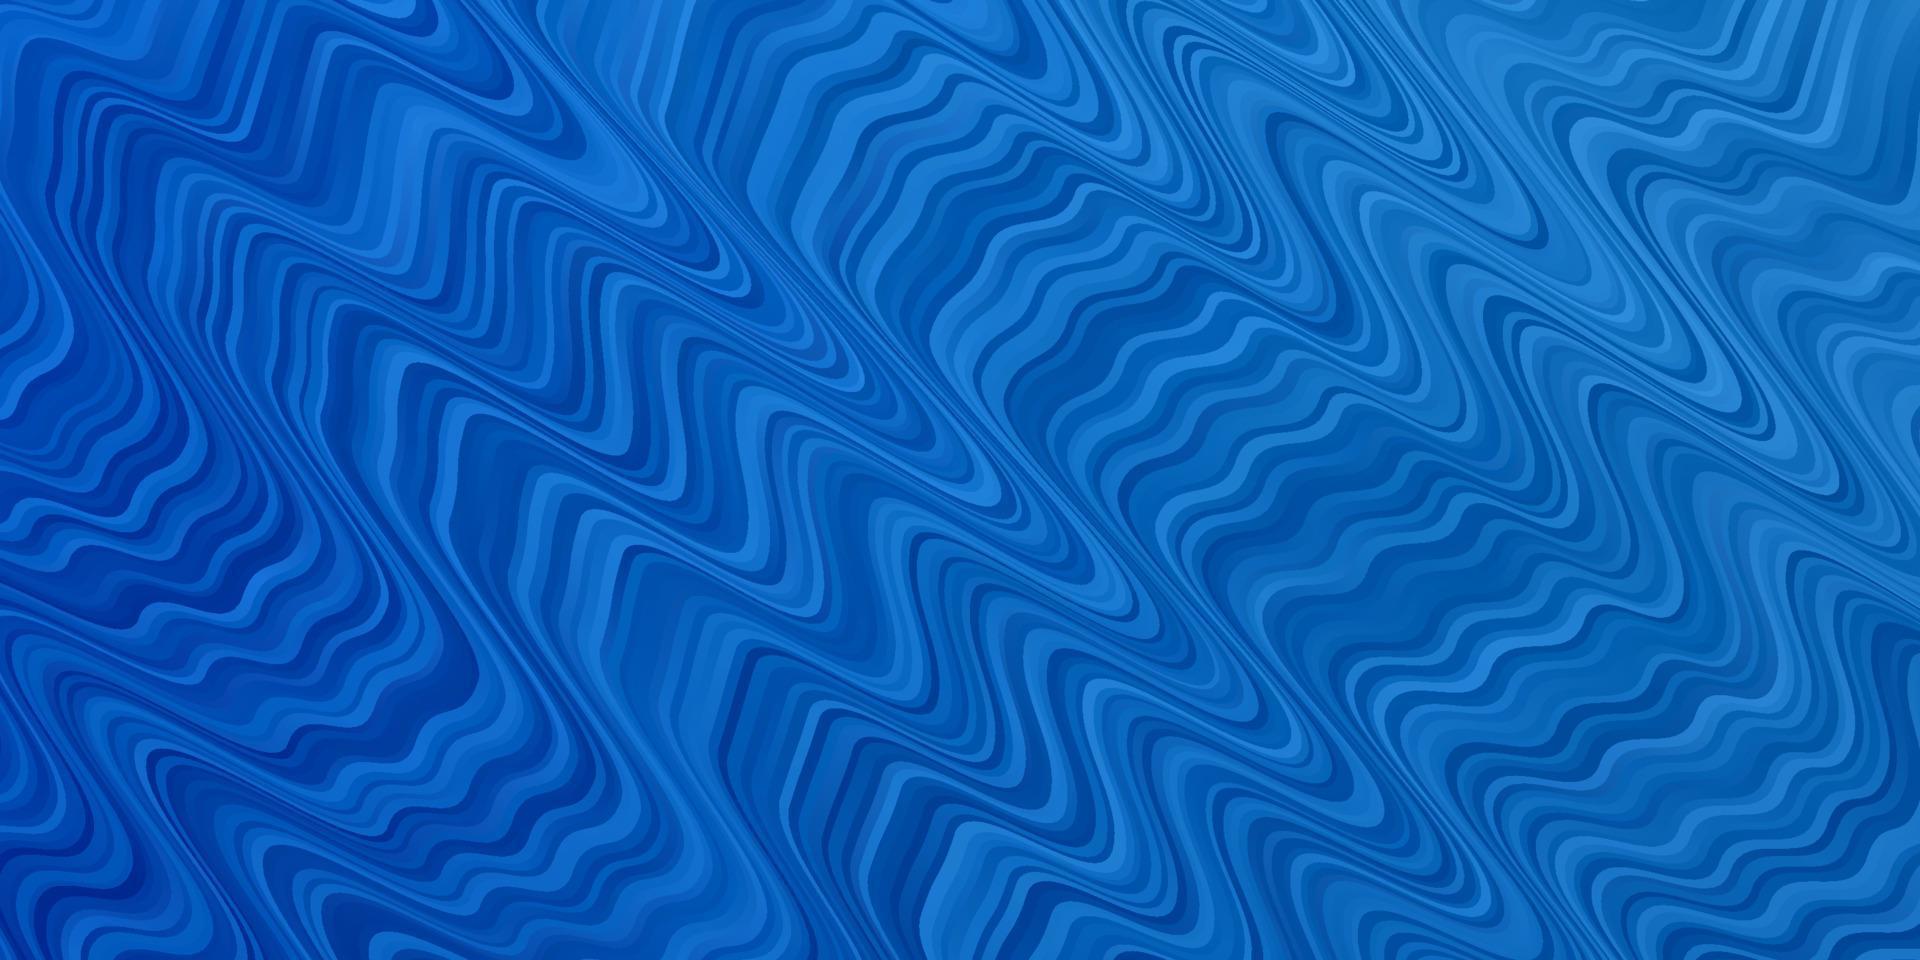 texture de vecteur bleu clair avec des courbes.